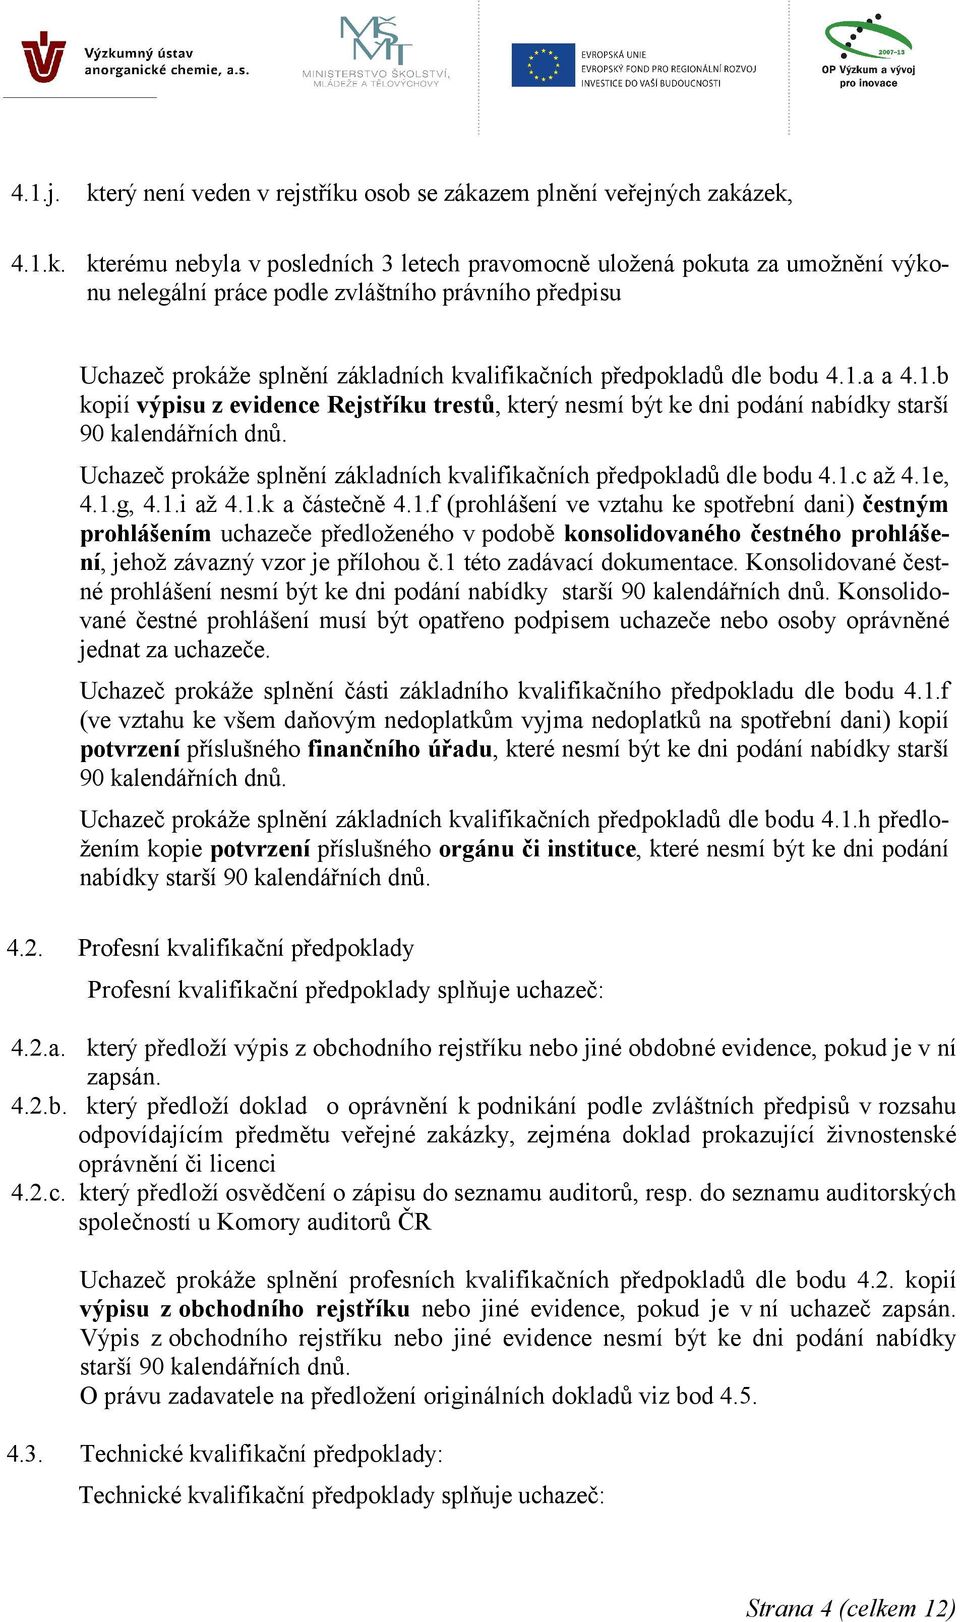 předpisu Uchazeč prokáže splnění základních kvalifikačních předpokladů dle bodu 4.1.a a 4.1.b kopií výpisu z evidence Rejstříku trestů, který nesmí být ke dni podání nabídky starší 90 kalendářních dnů.